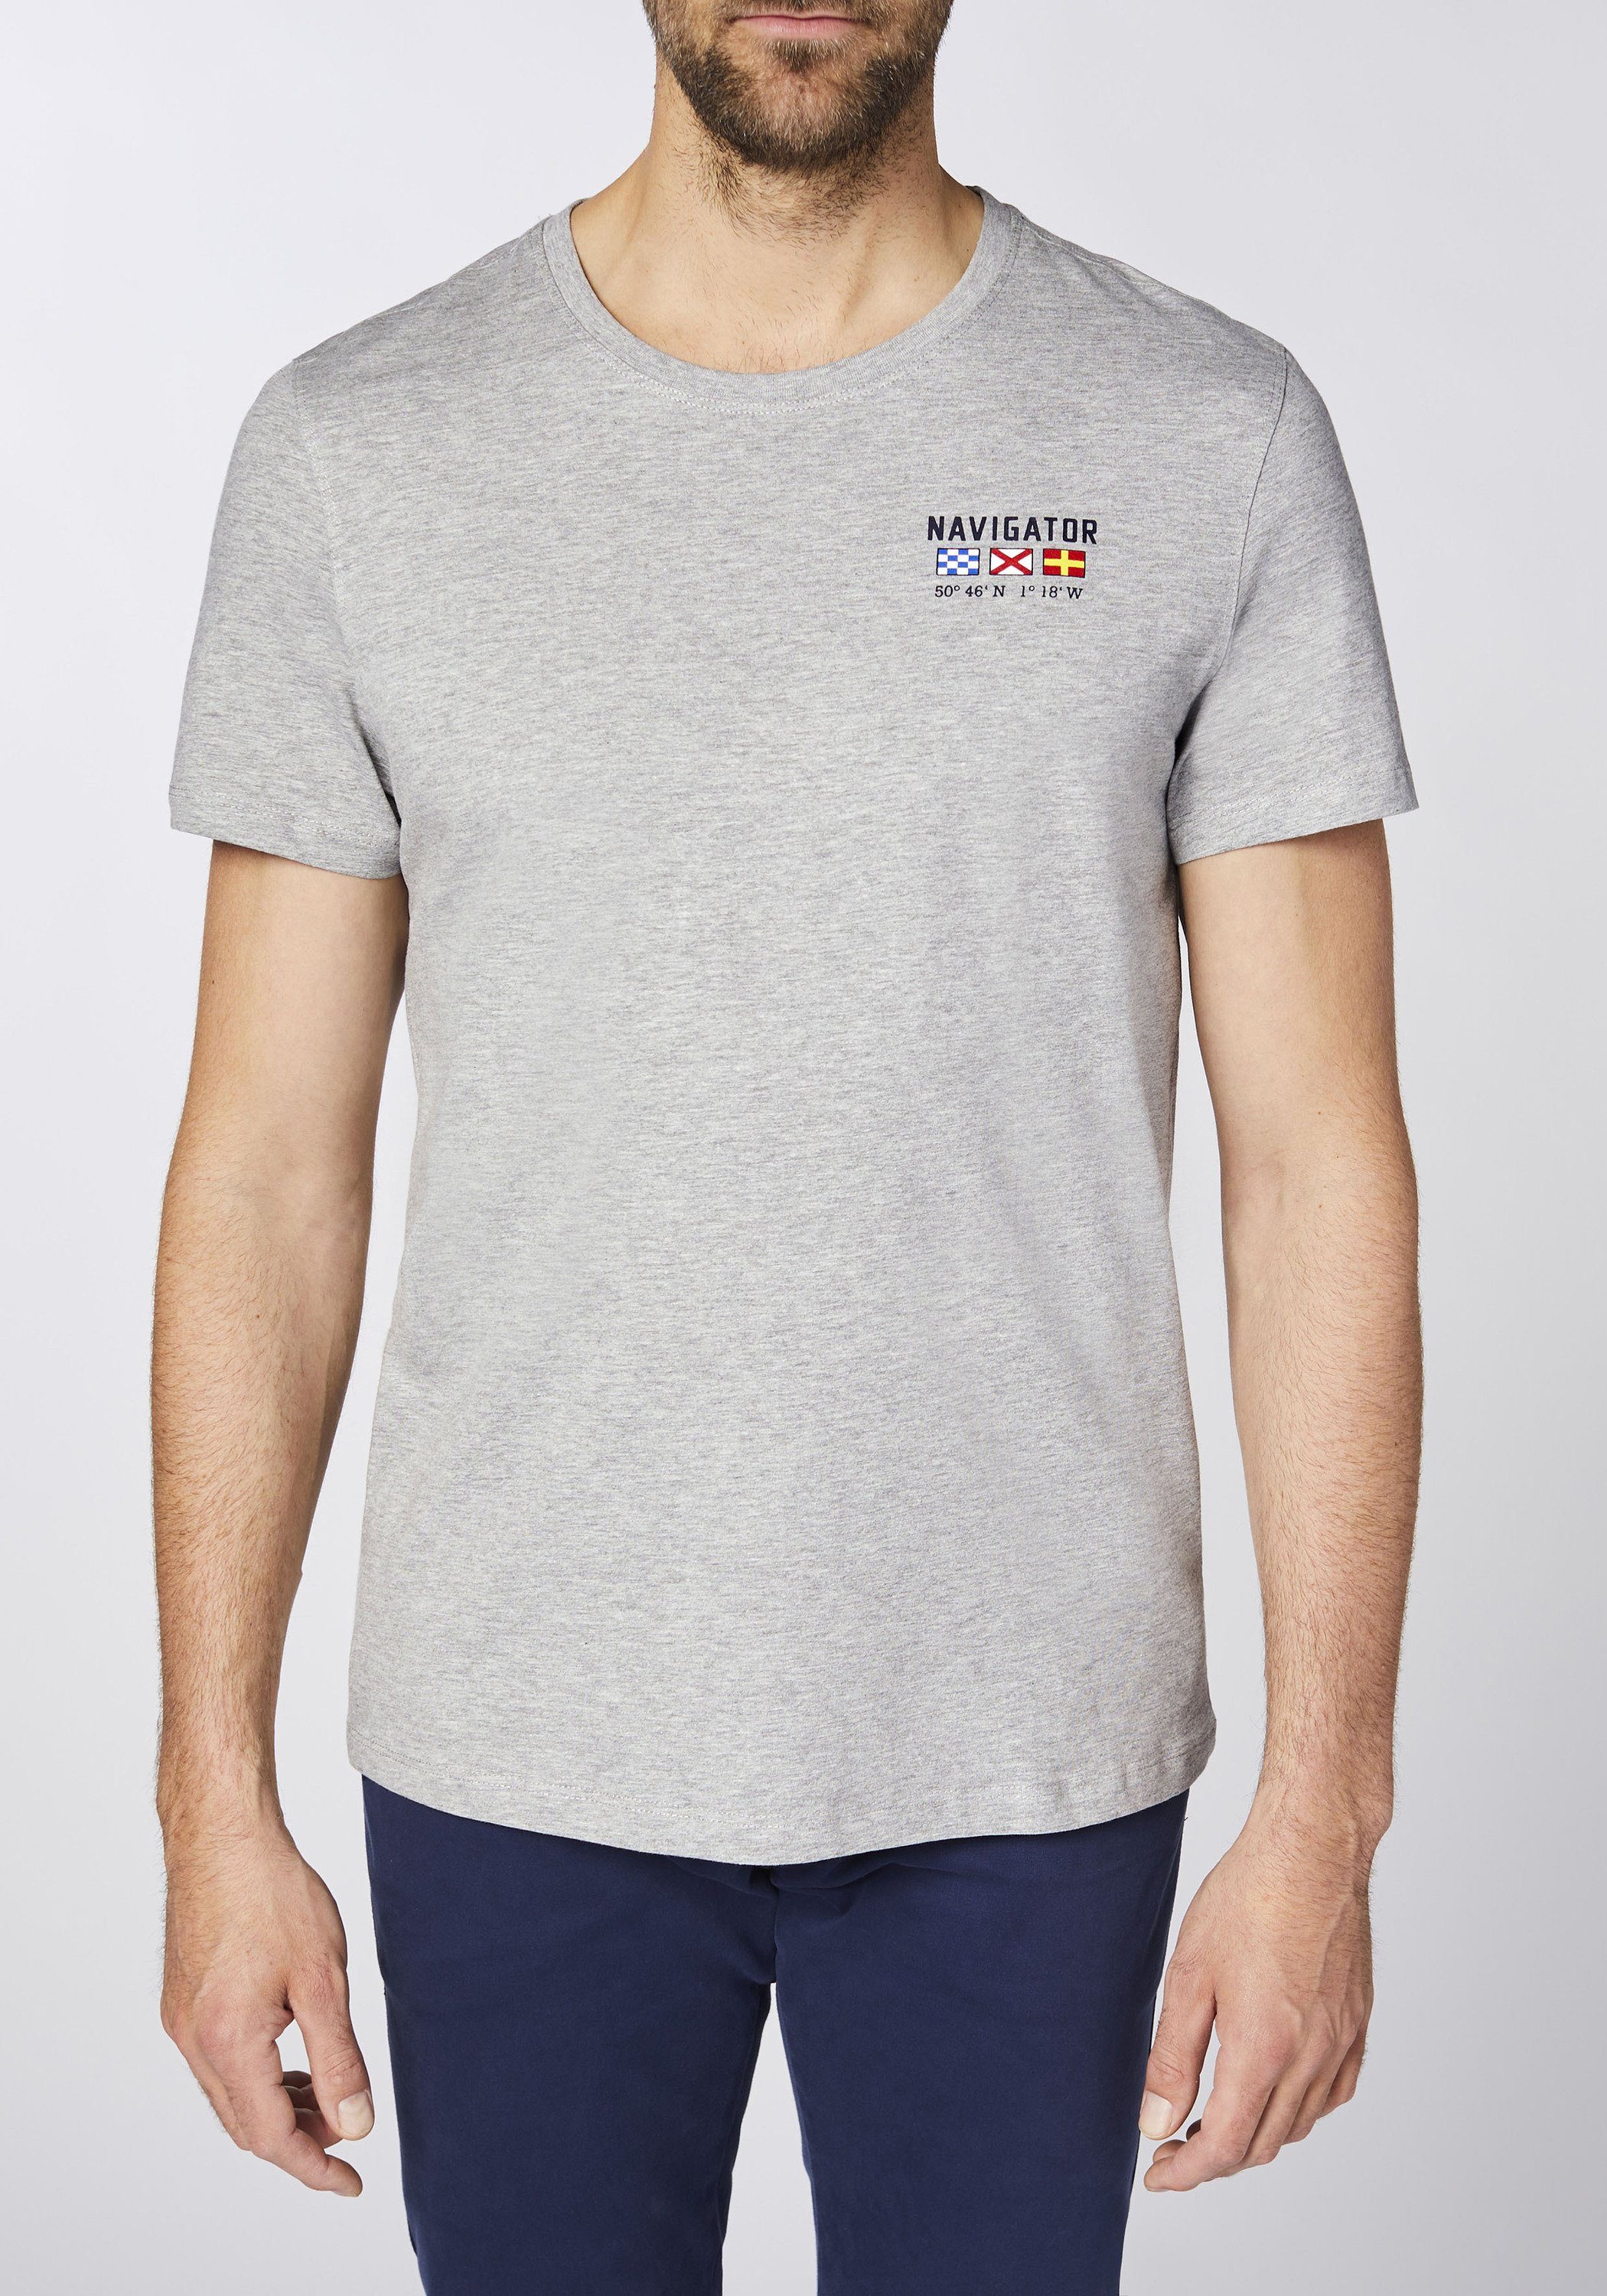 Gray weicher Print-Shirt Neutr. aus M NAVIGATOR Sweatware